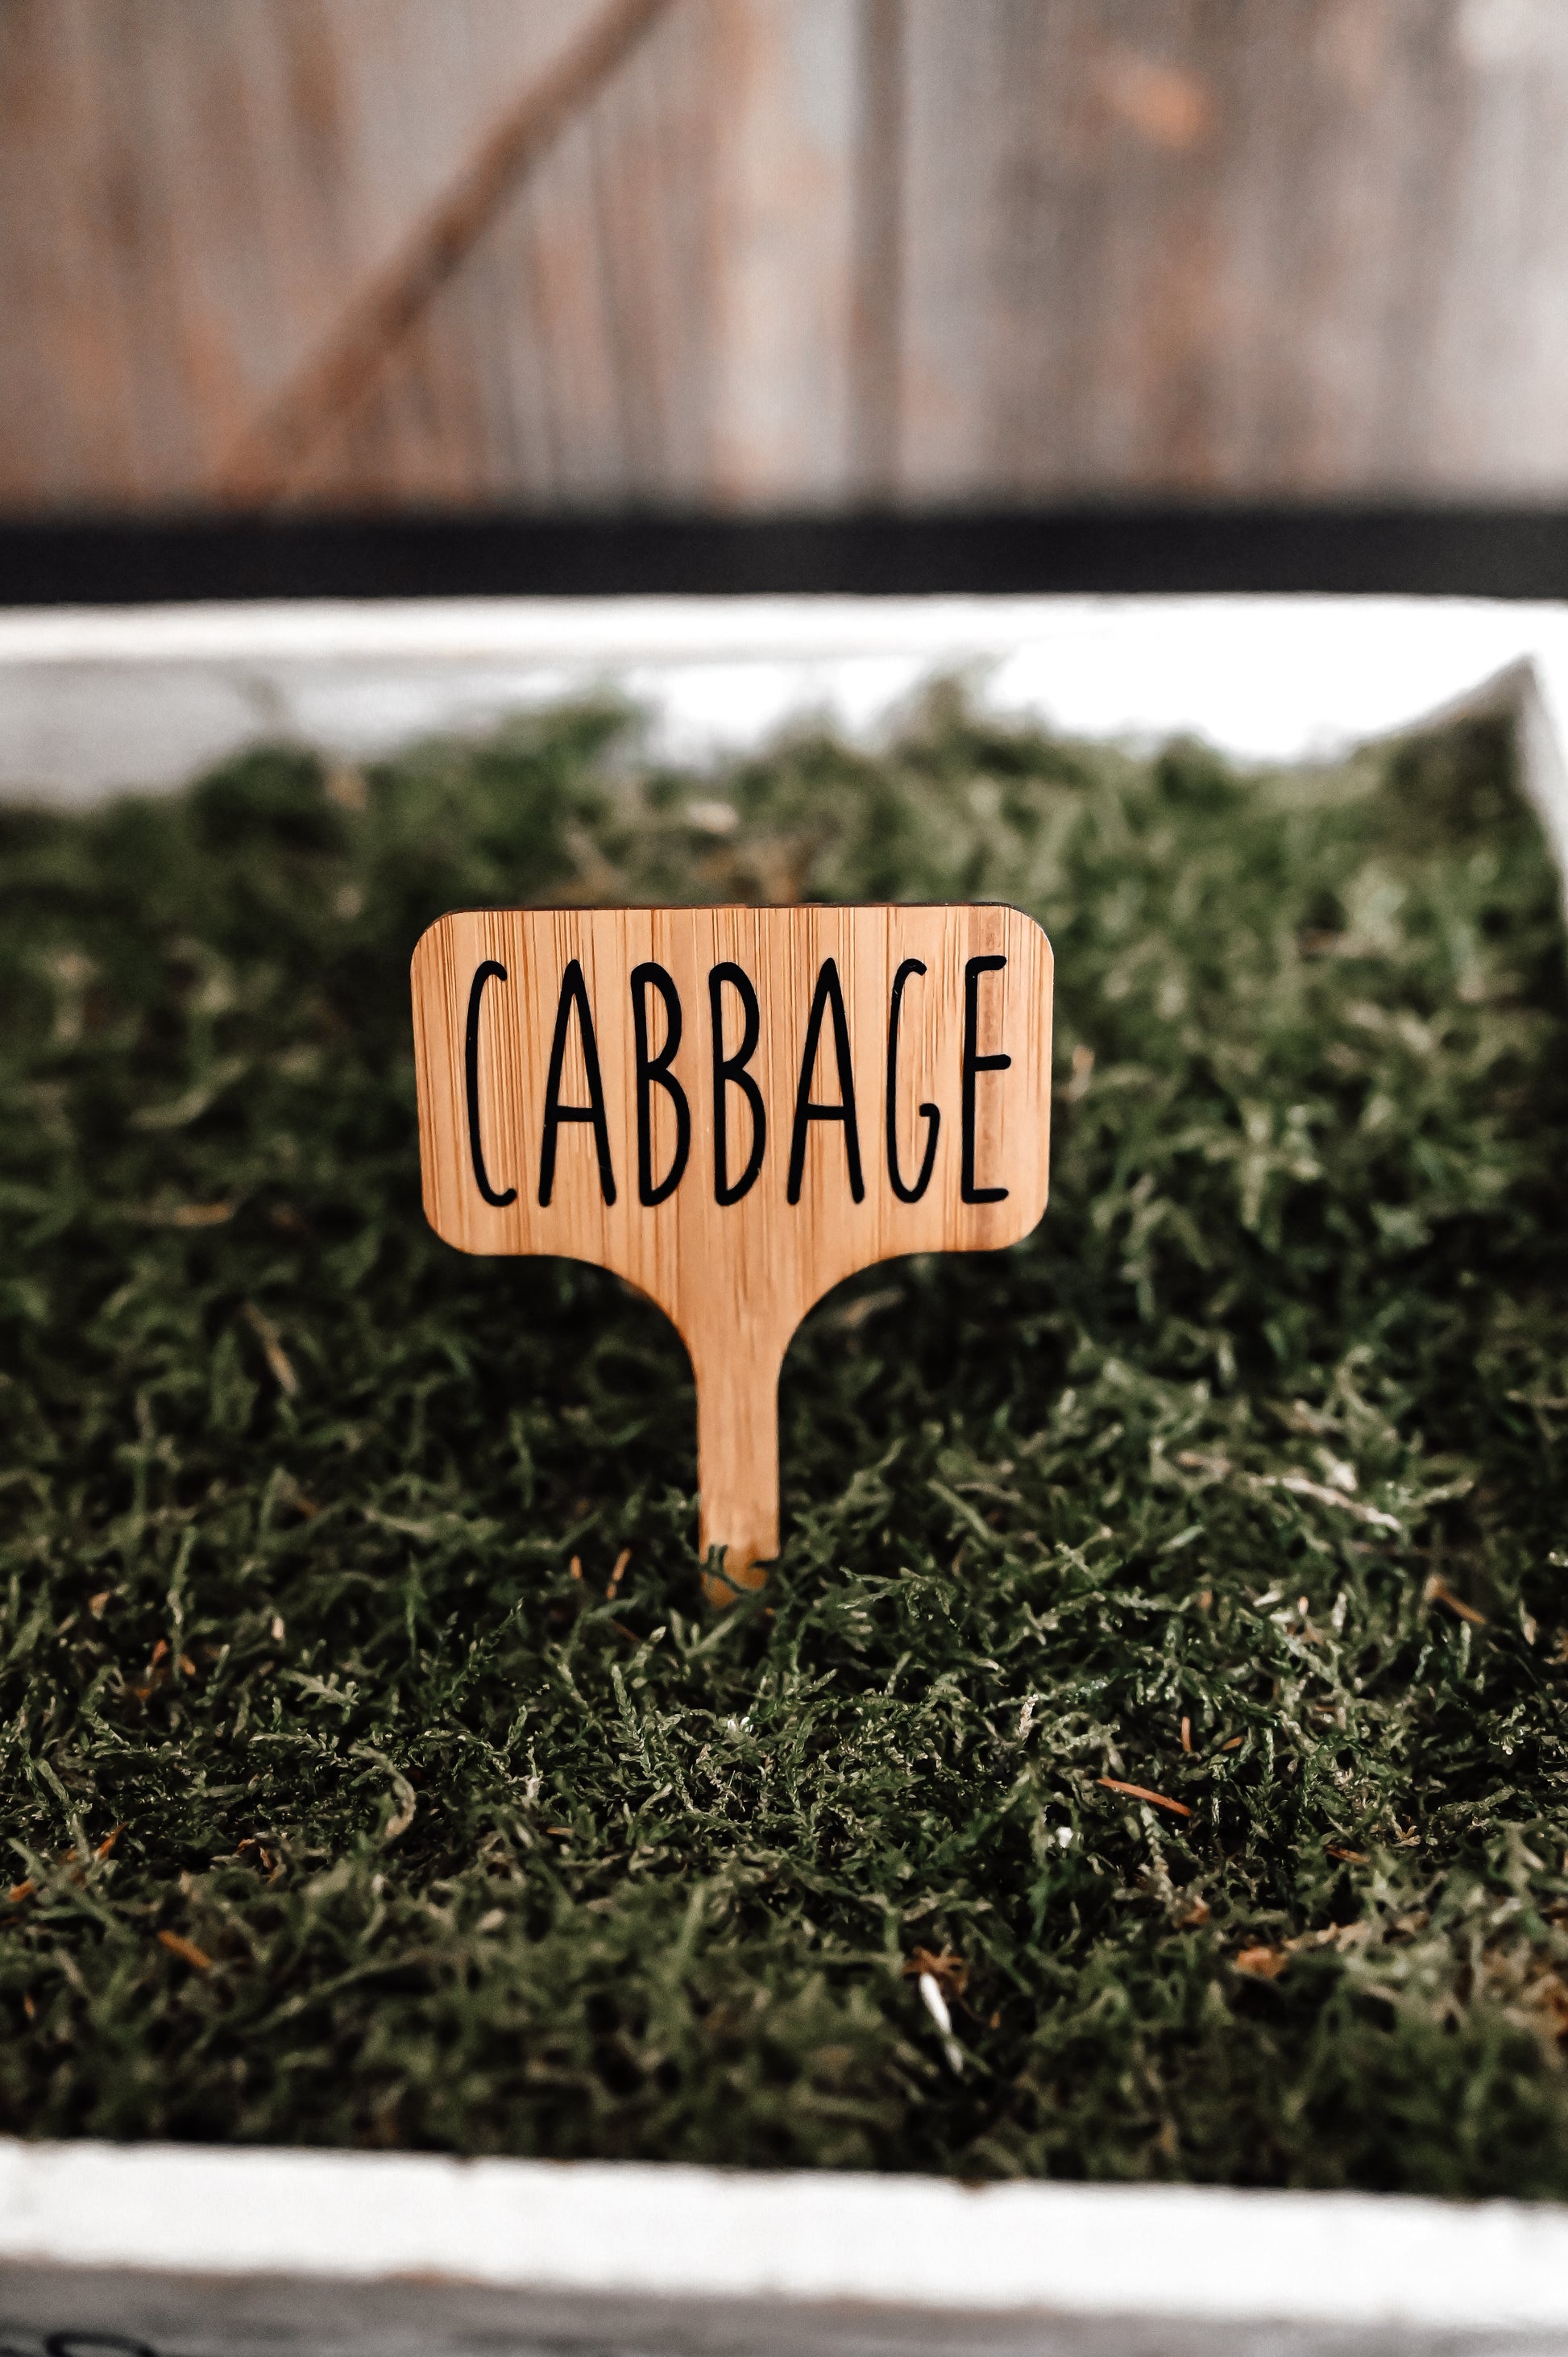 cabbage-garden-stake